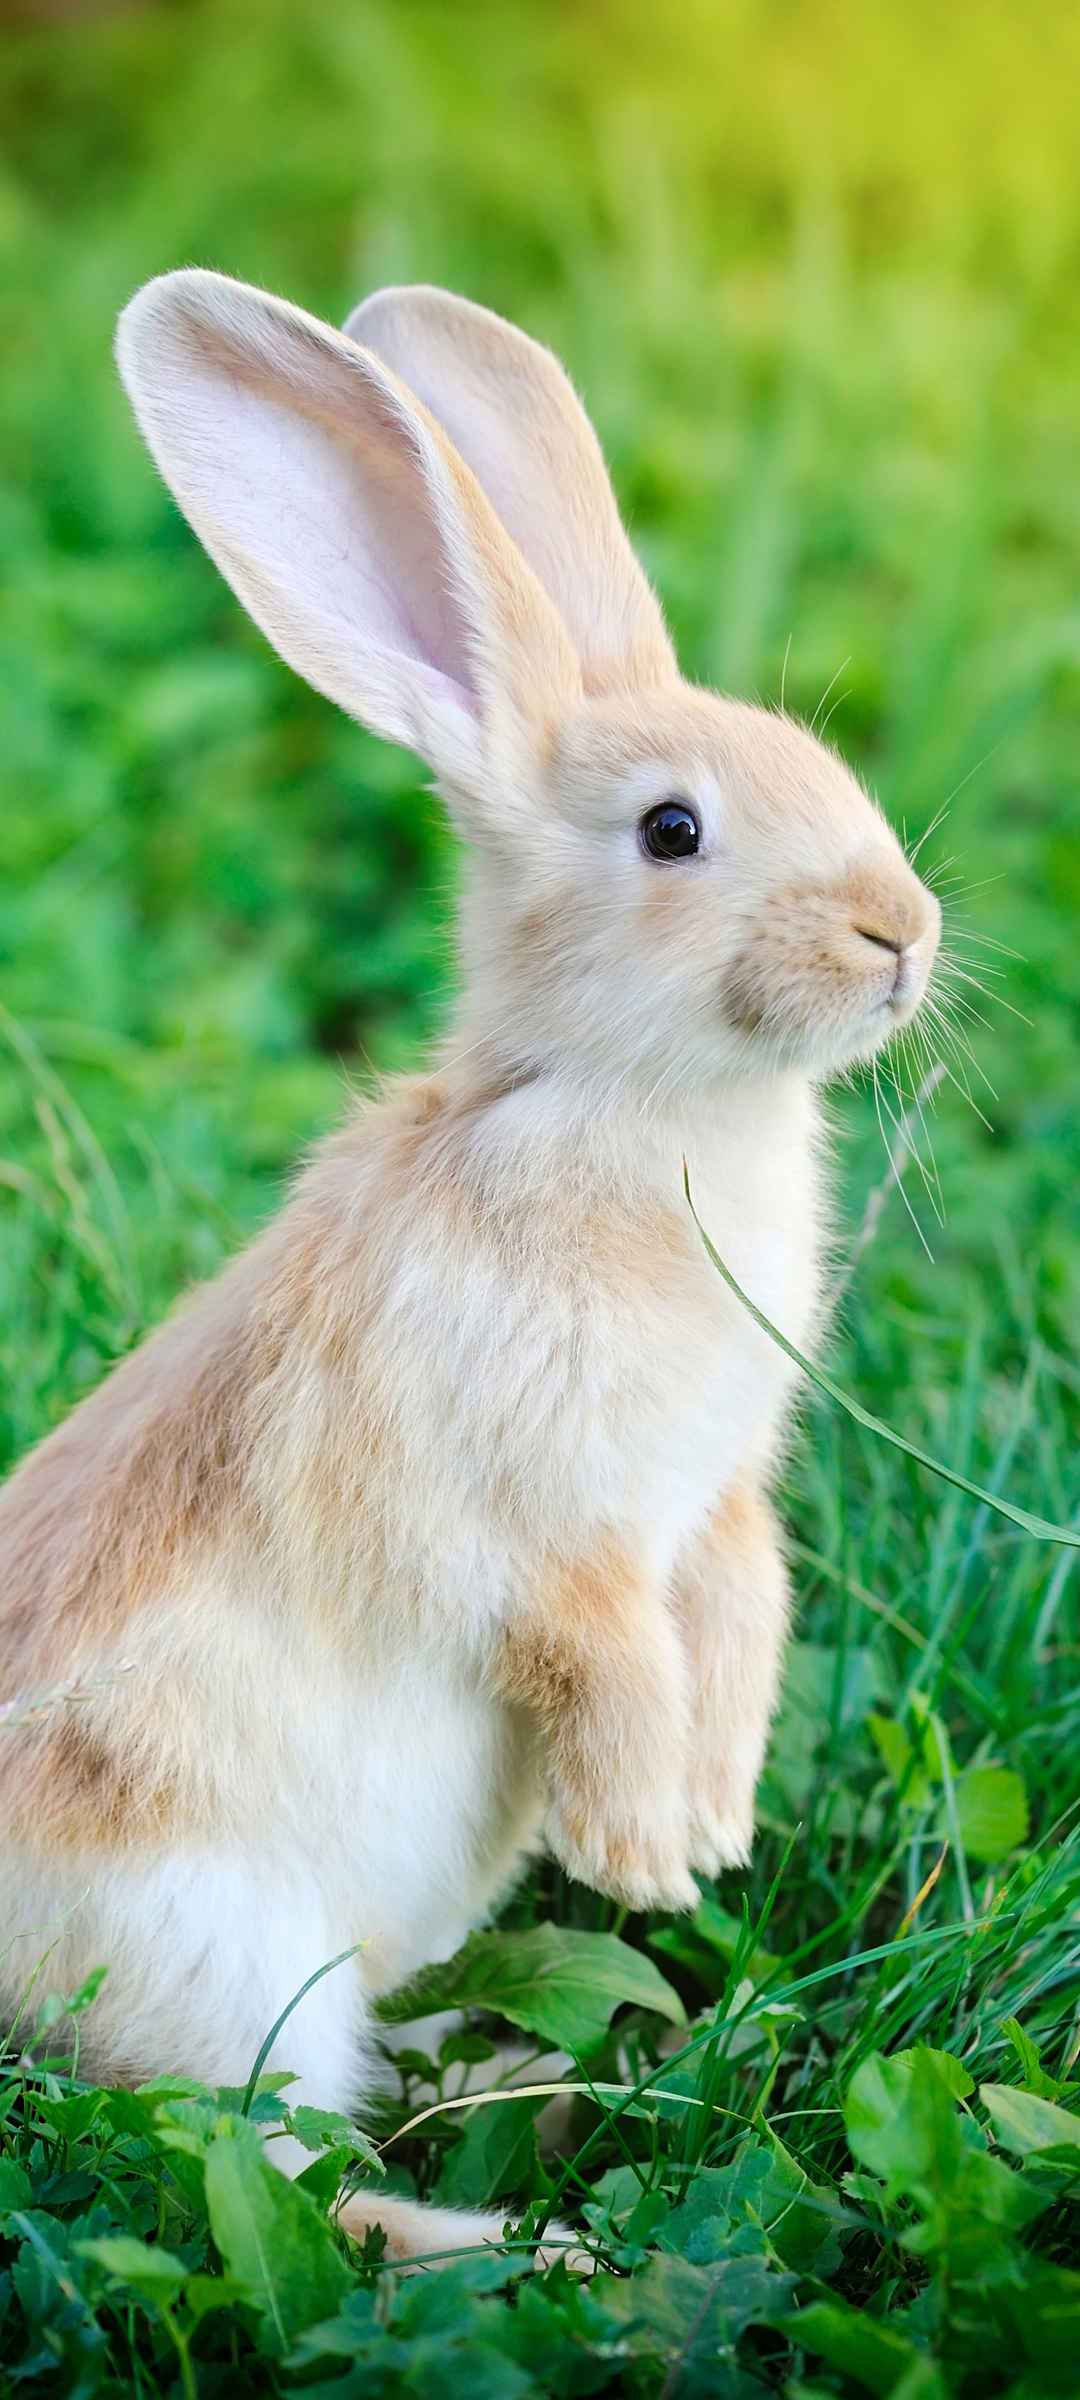 长耳朵兔子小动物壁纸高清图片-